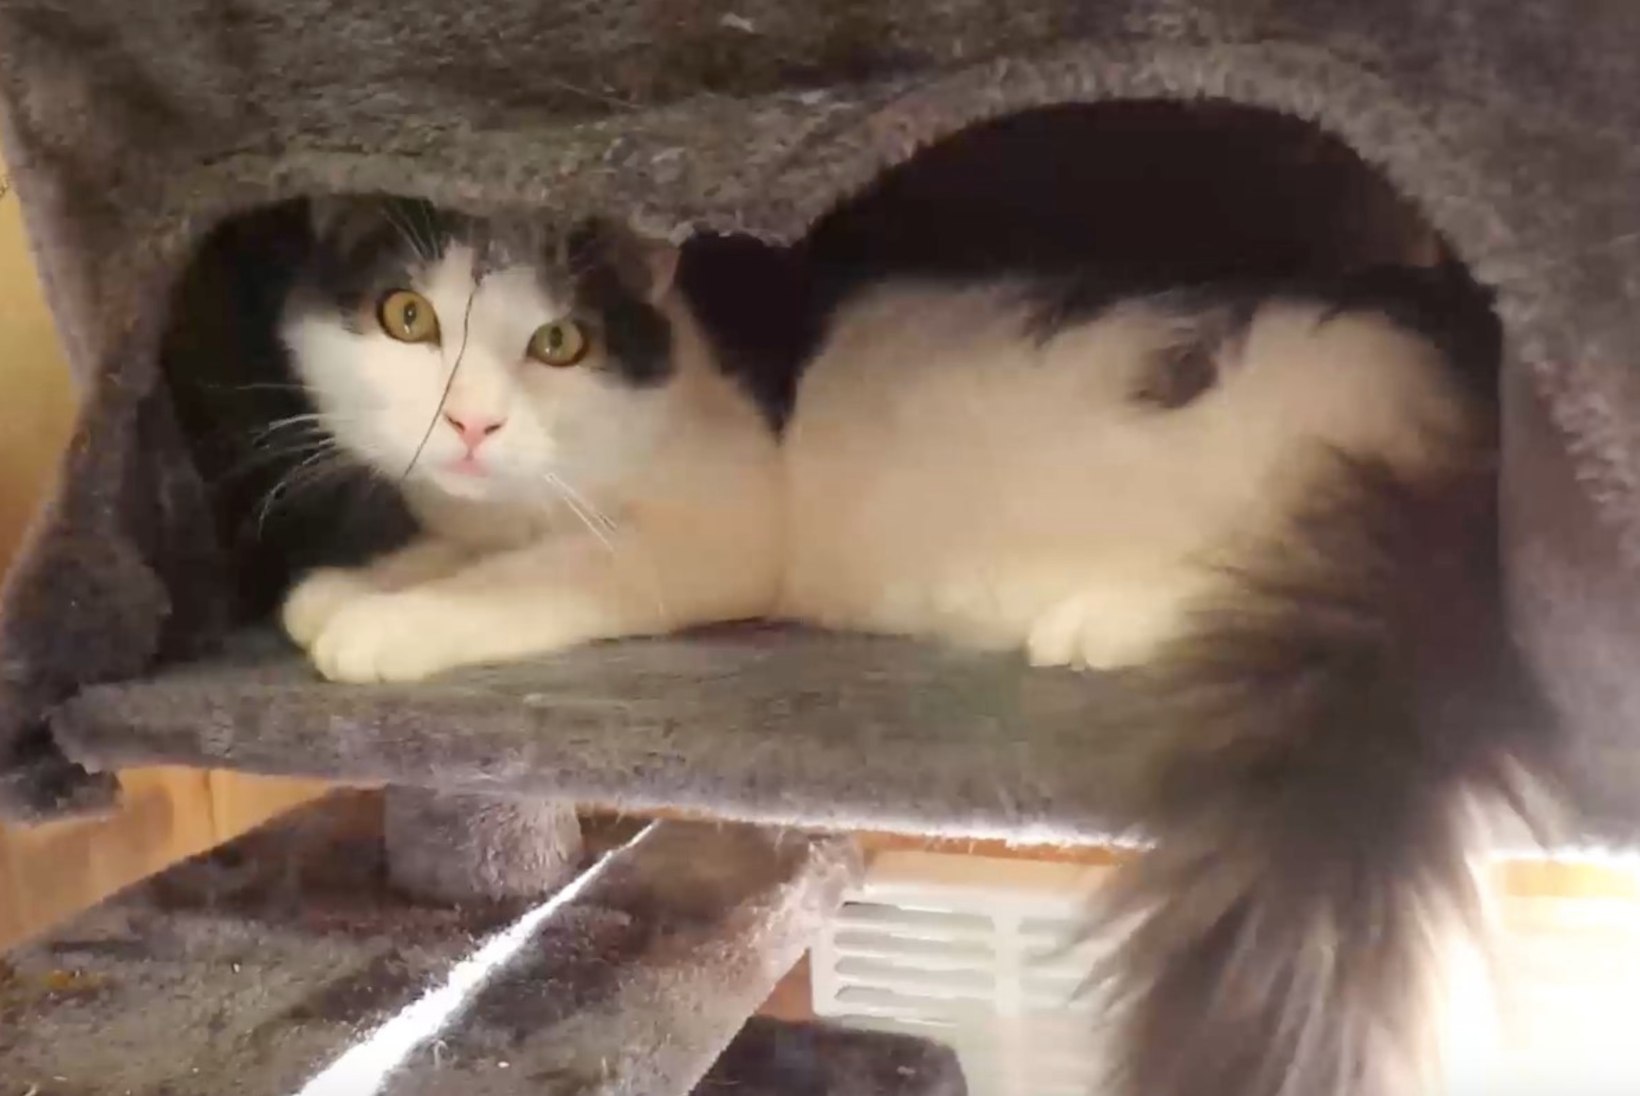 ÕHTULEHE VIDEO | Koduotsija: Varjupaiga kassipoegade toas ootab kodu kümme lustlikku kassilast!